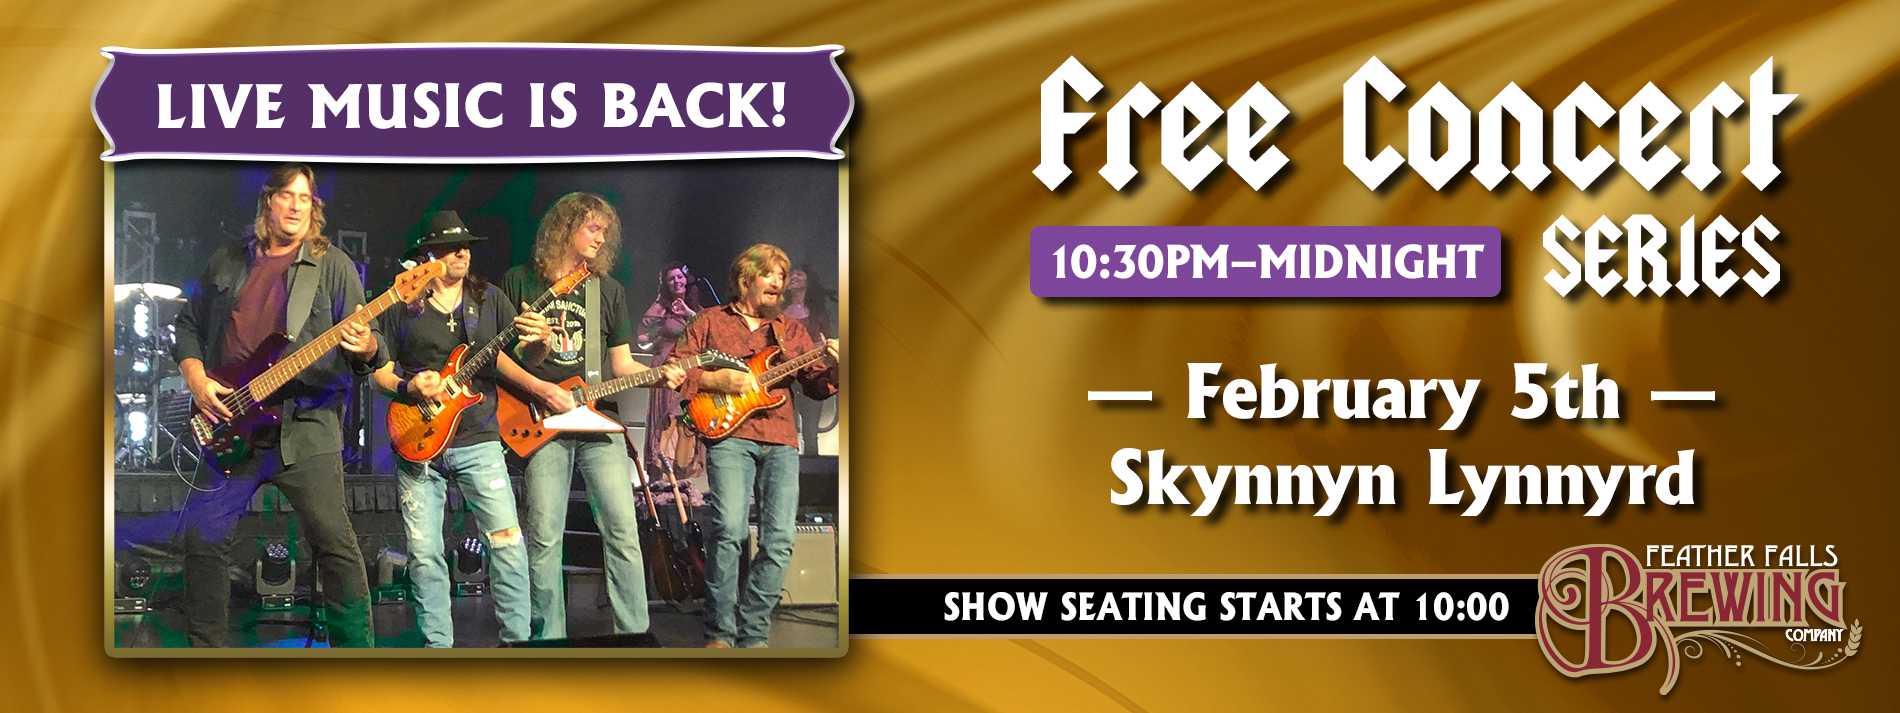 Free Concert Series Skynnyn Lynnyrd